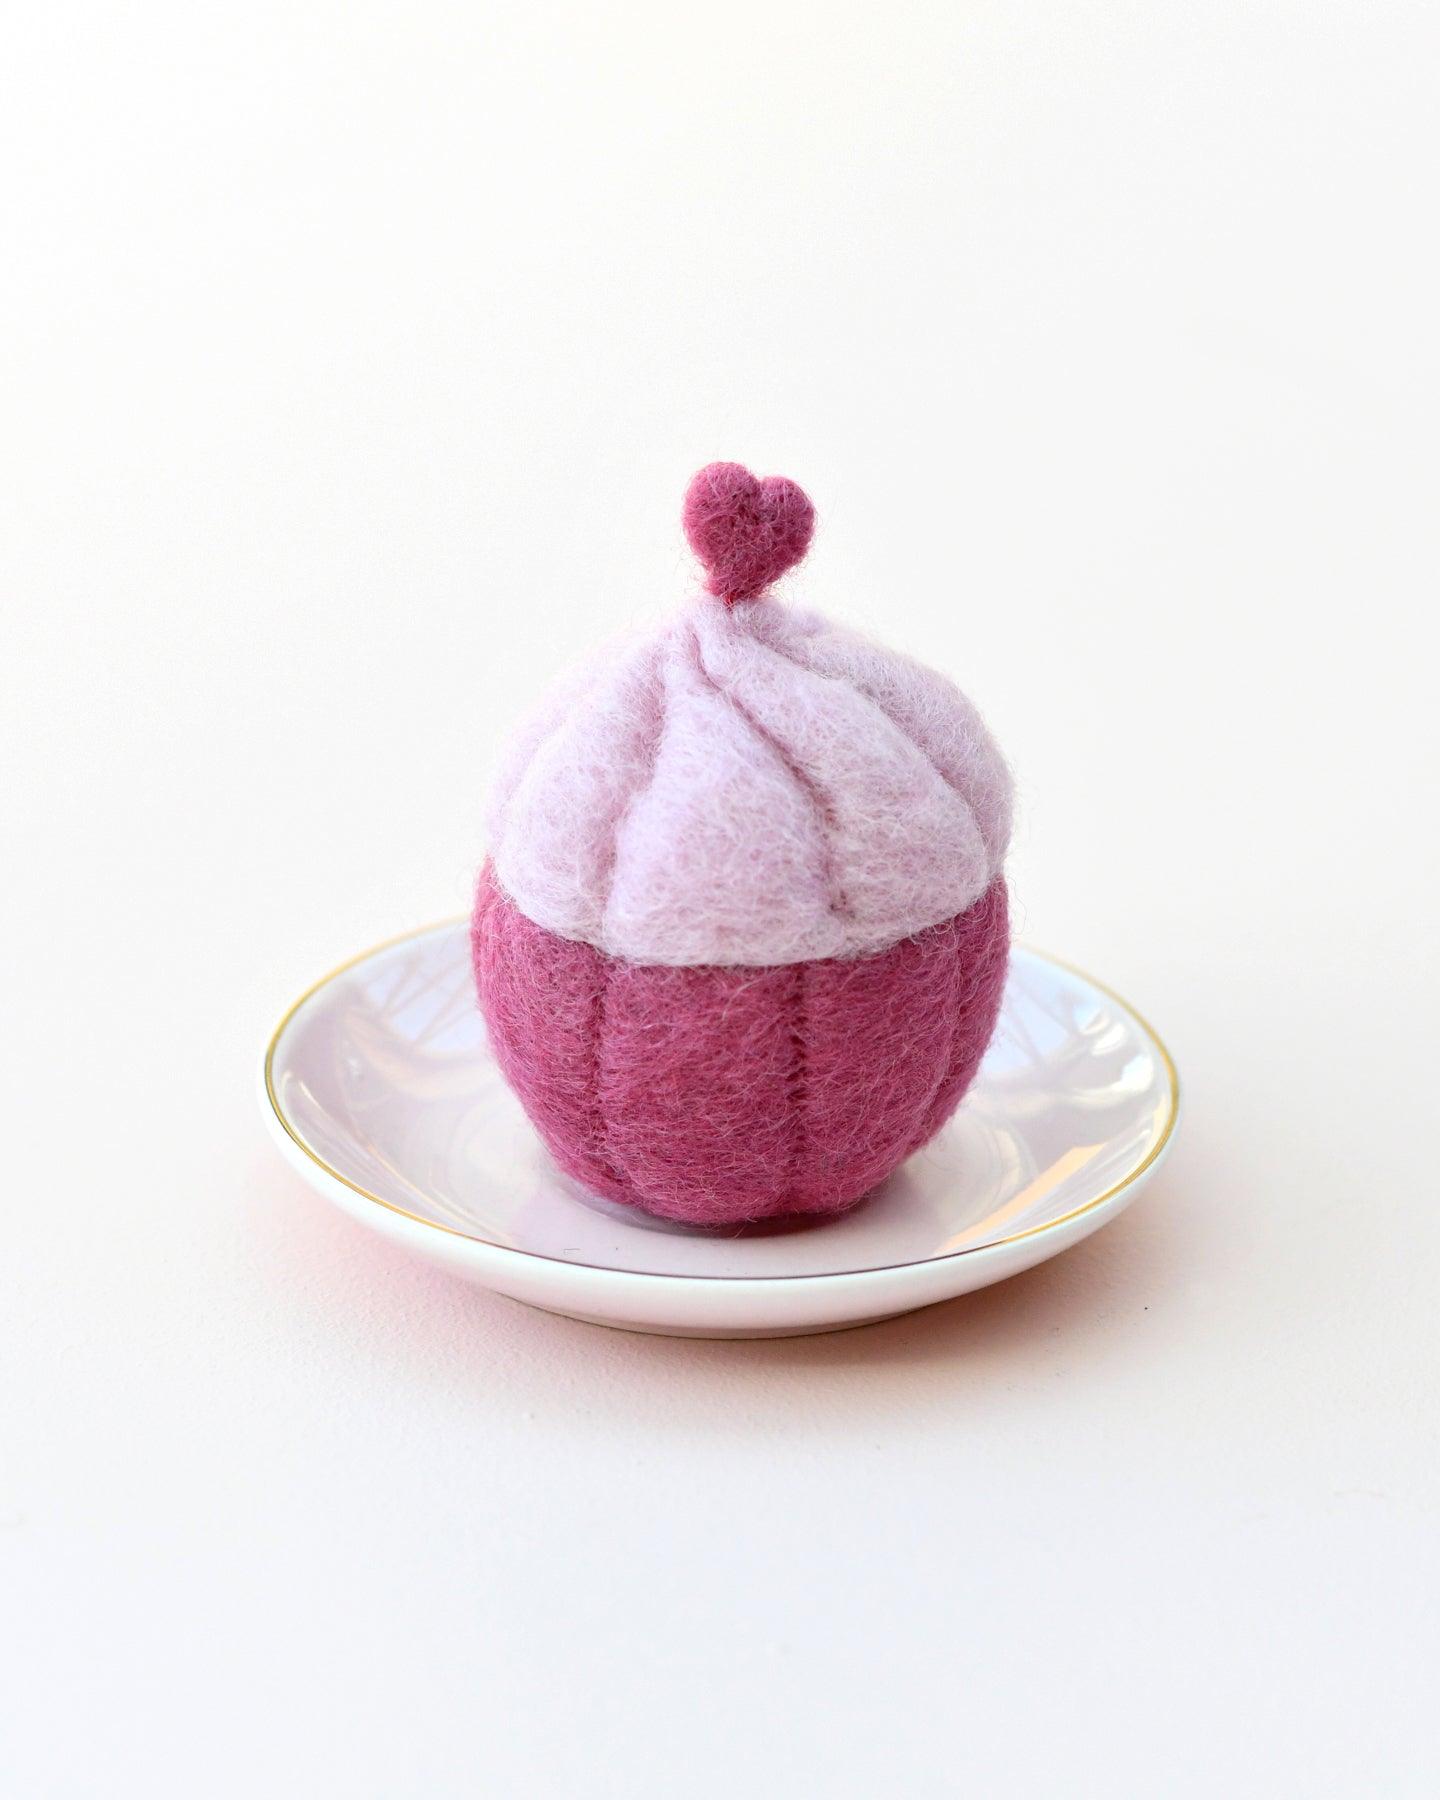 Felt Cupcake - Pink Heart